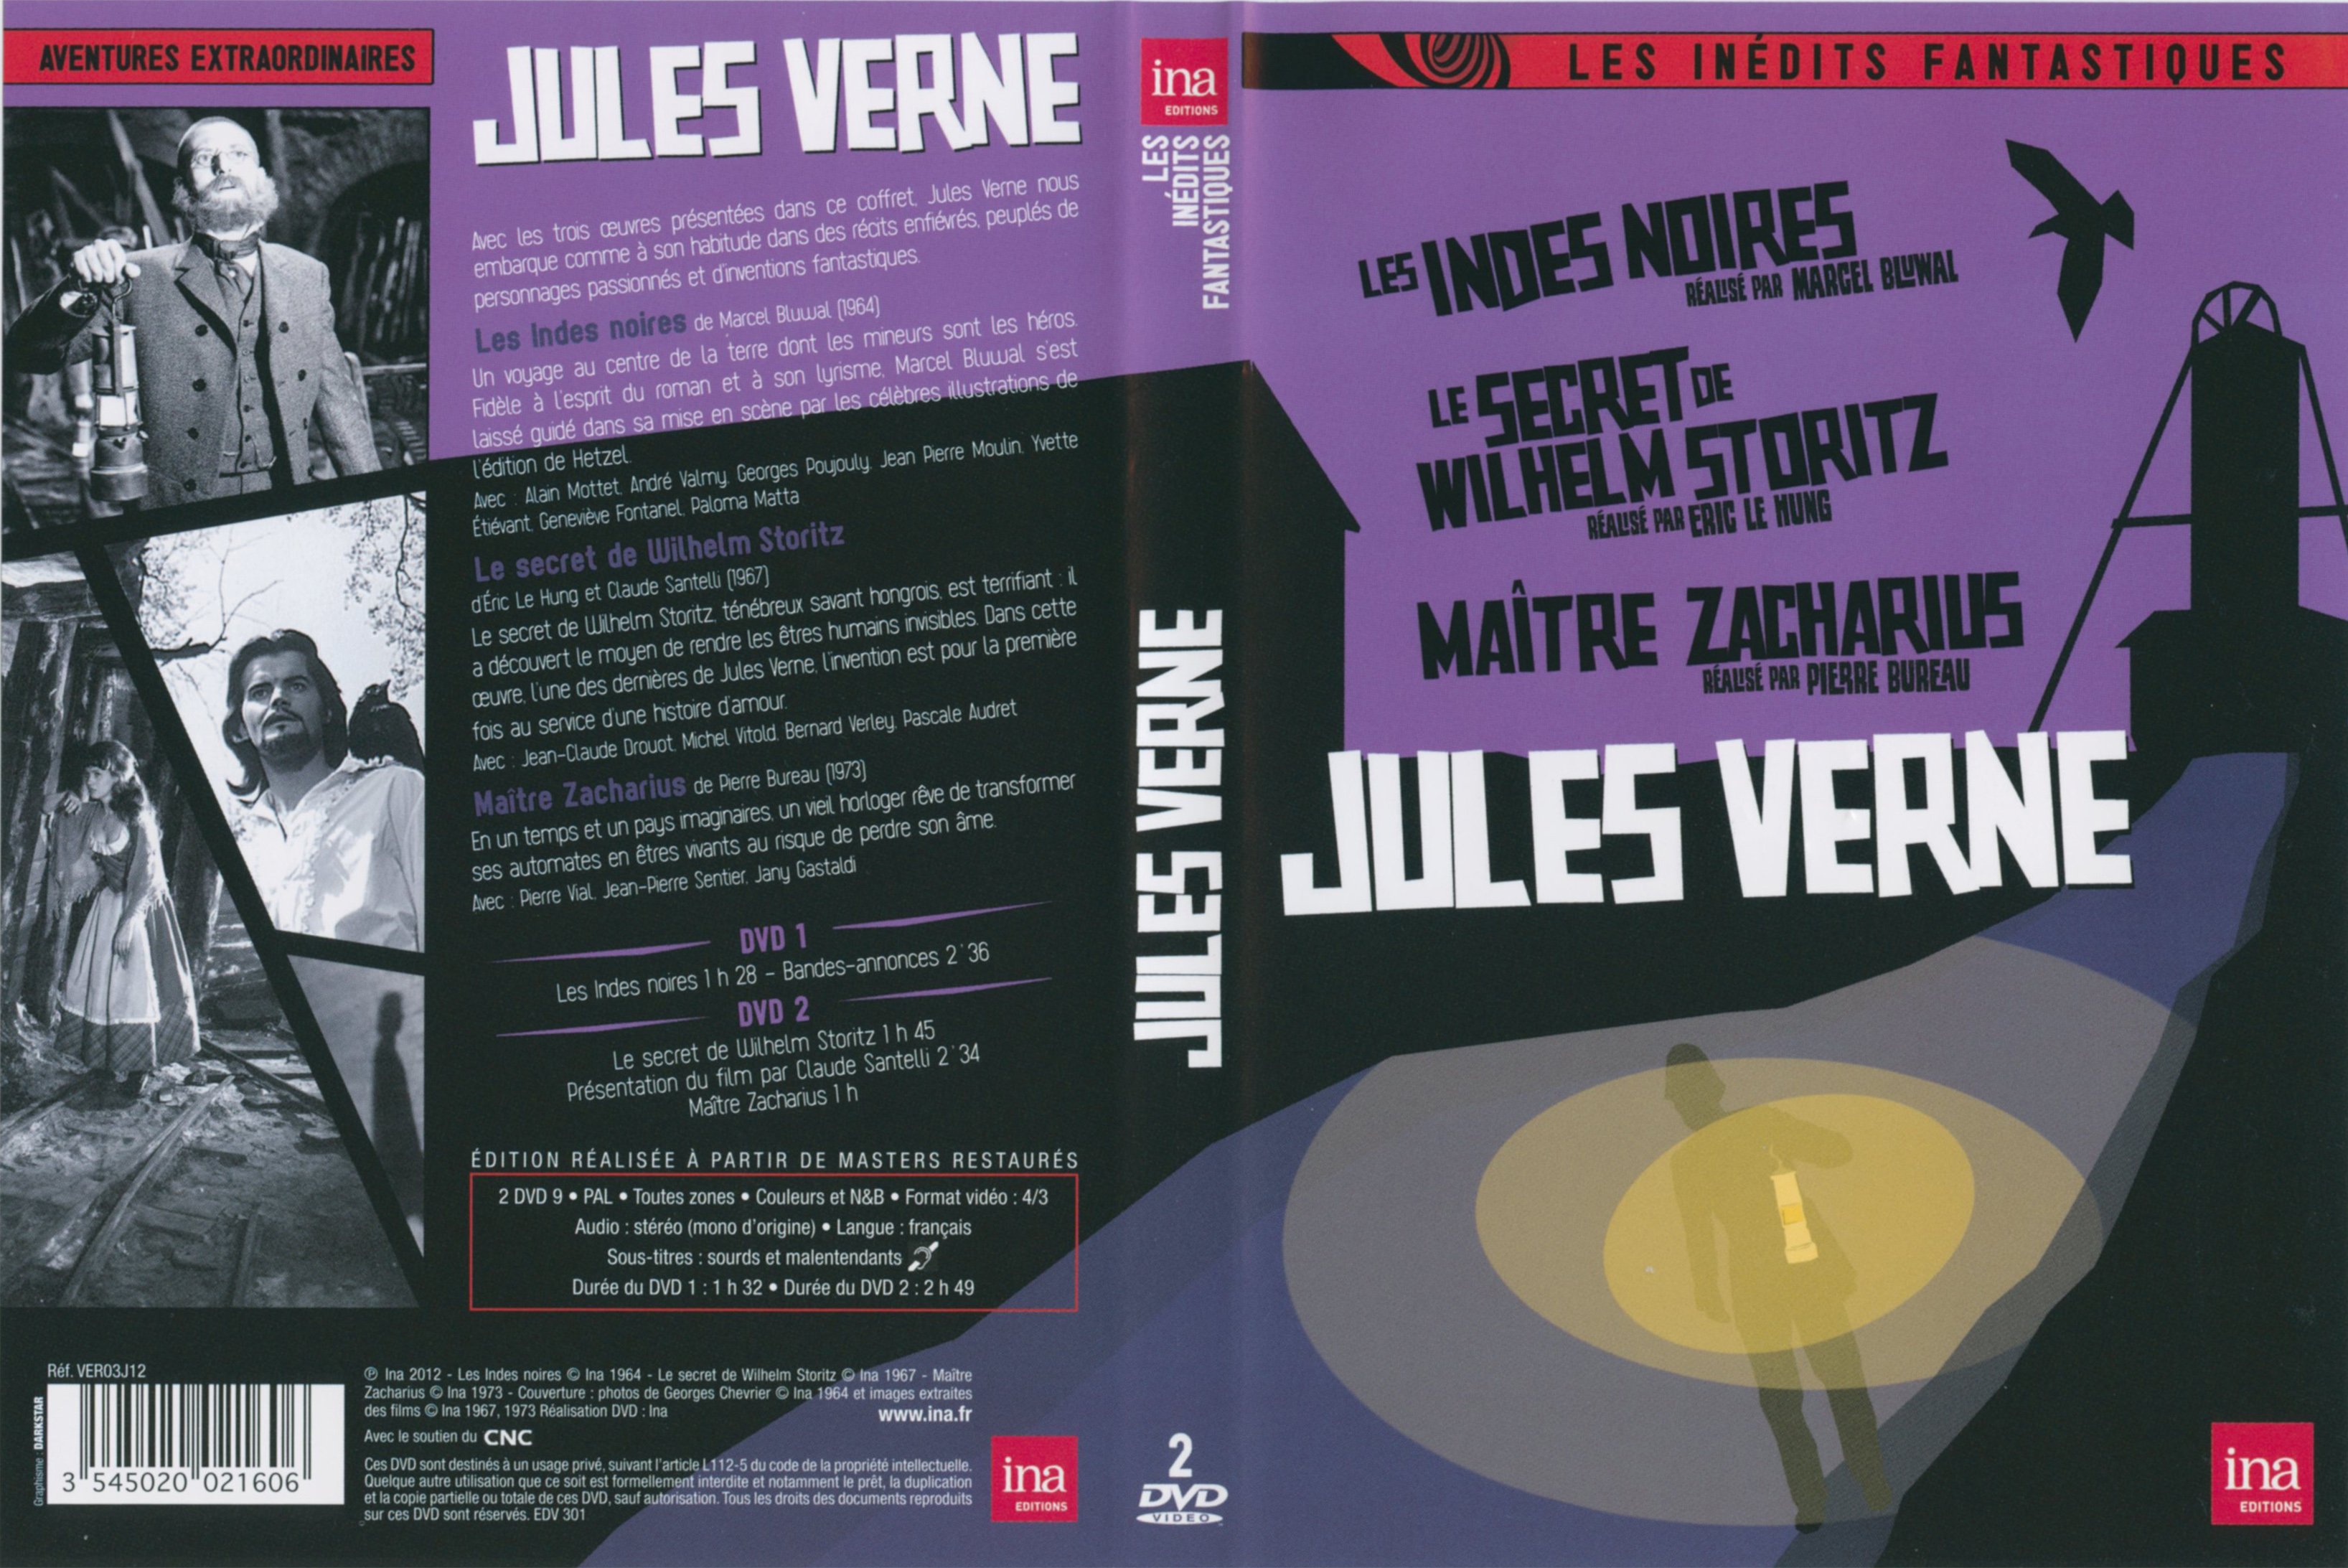 Jaquette DVD Jules Verne- Les indes noires - Le secret de Wilhelm Storitz - Maitre Zacharius